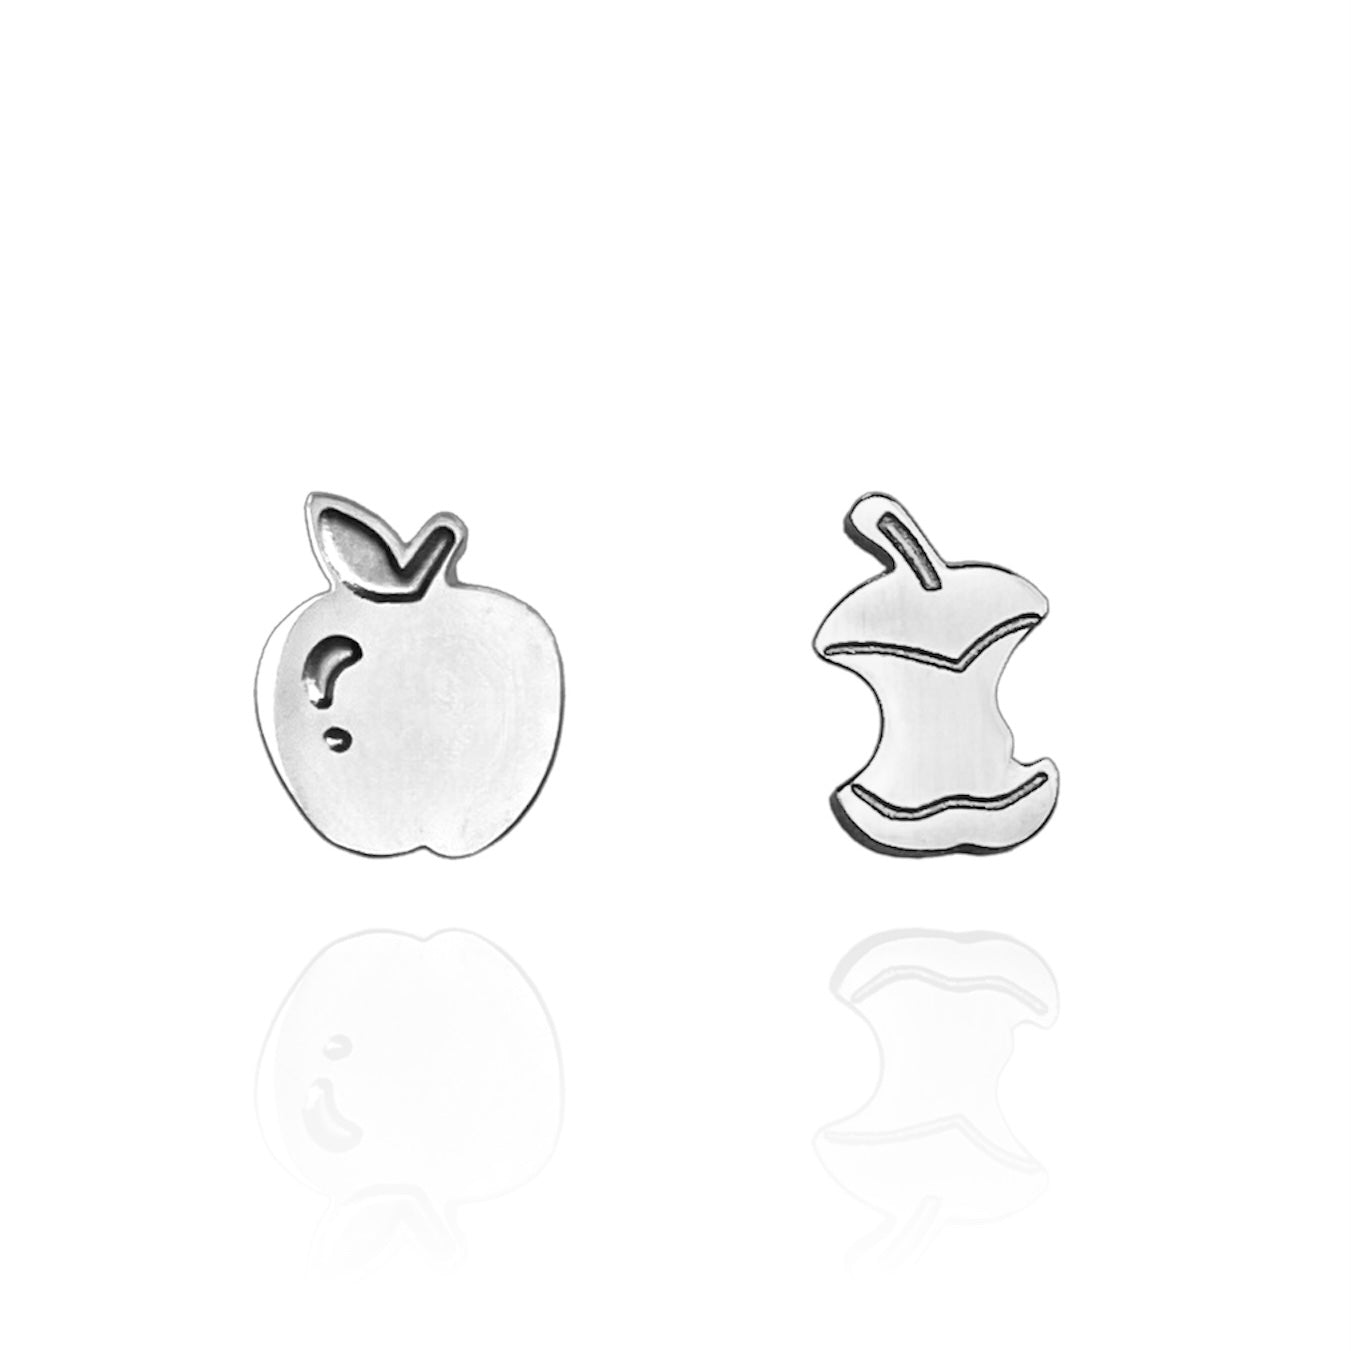 Apple Earring Studs Silver